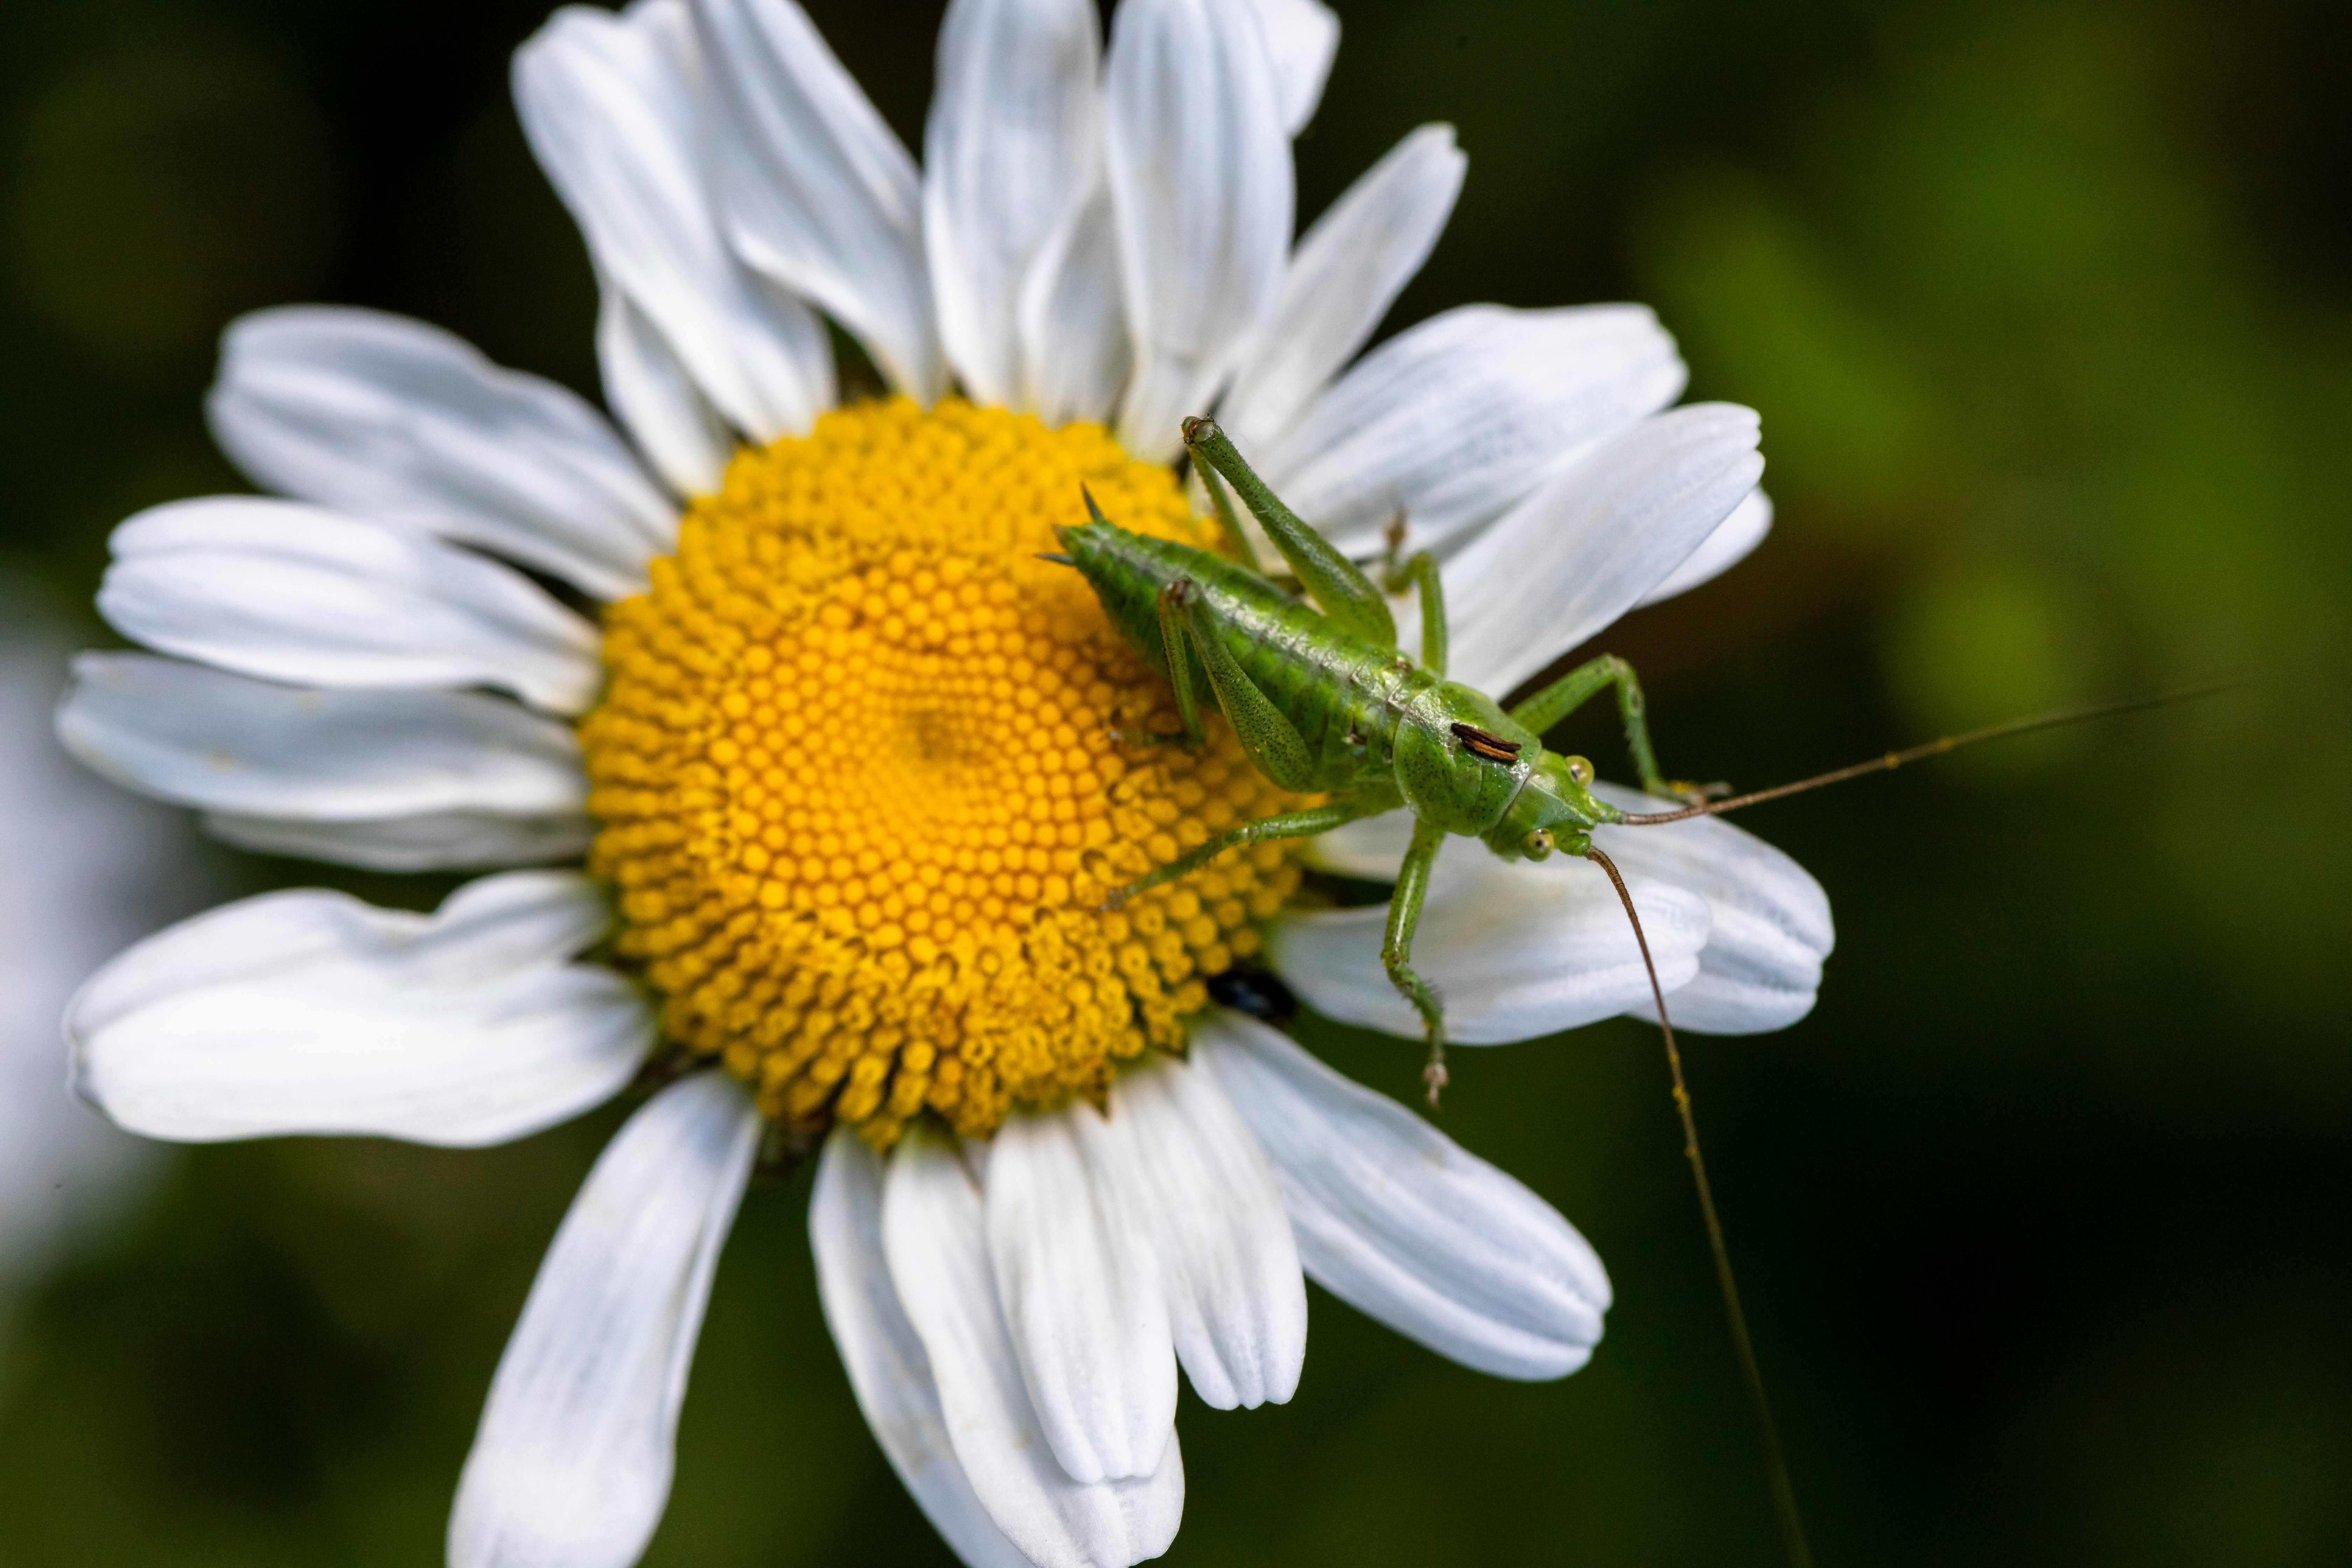 green grasshopper on white daisy flower